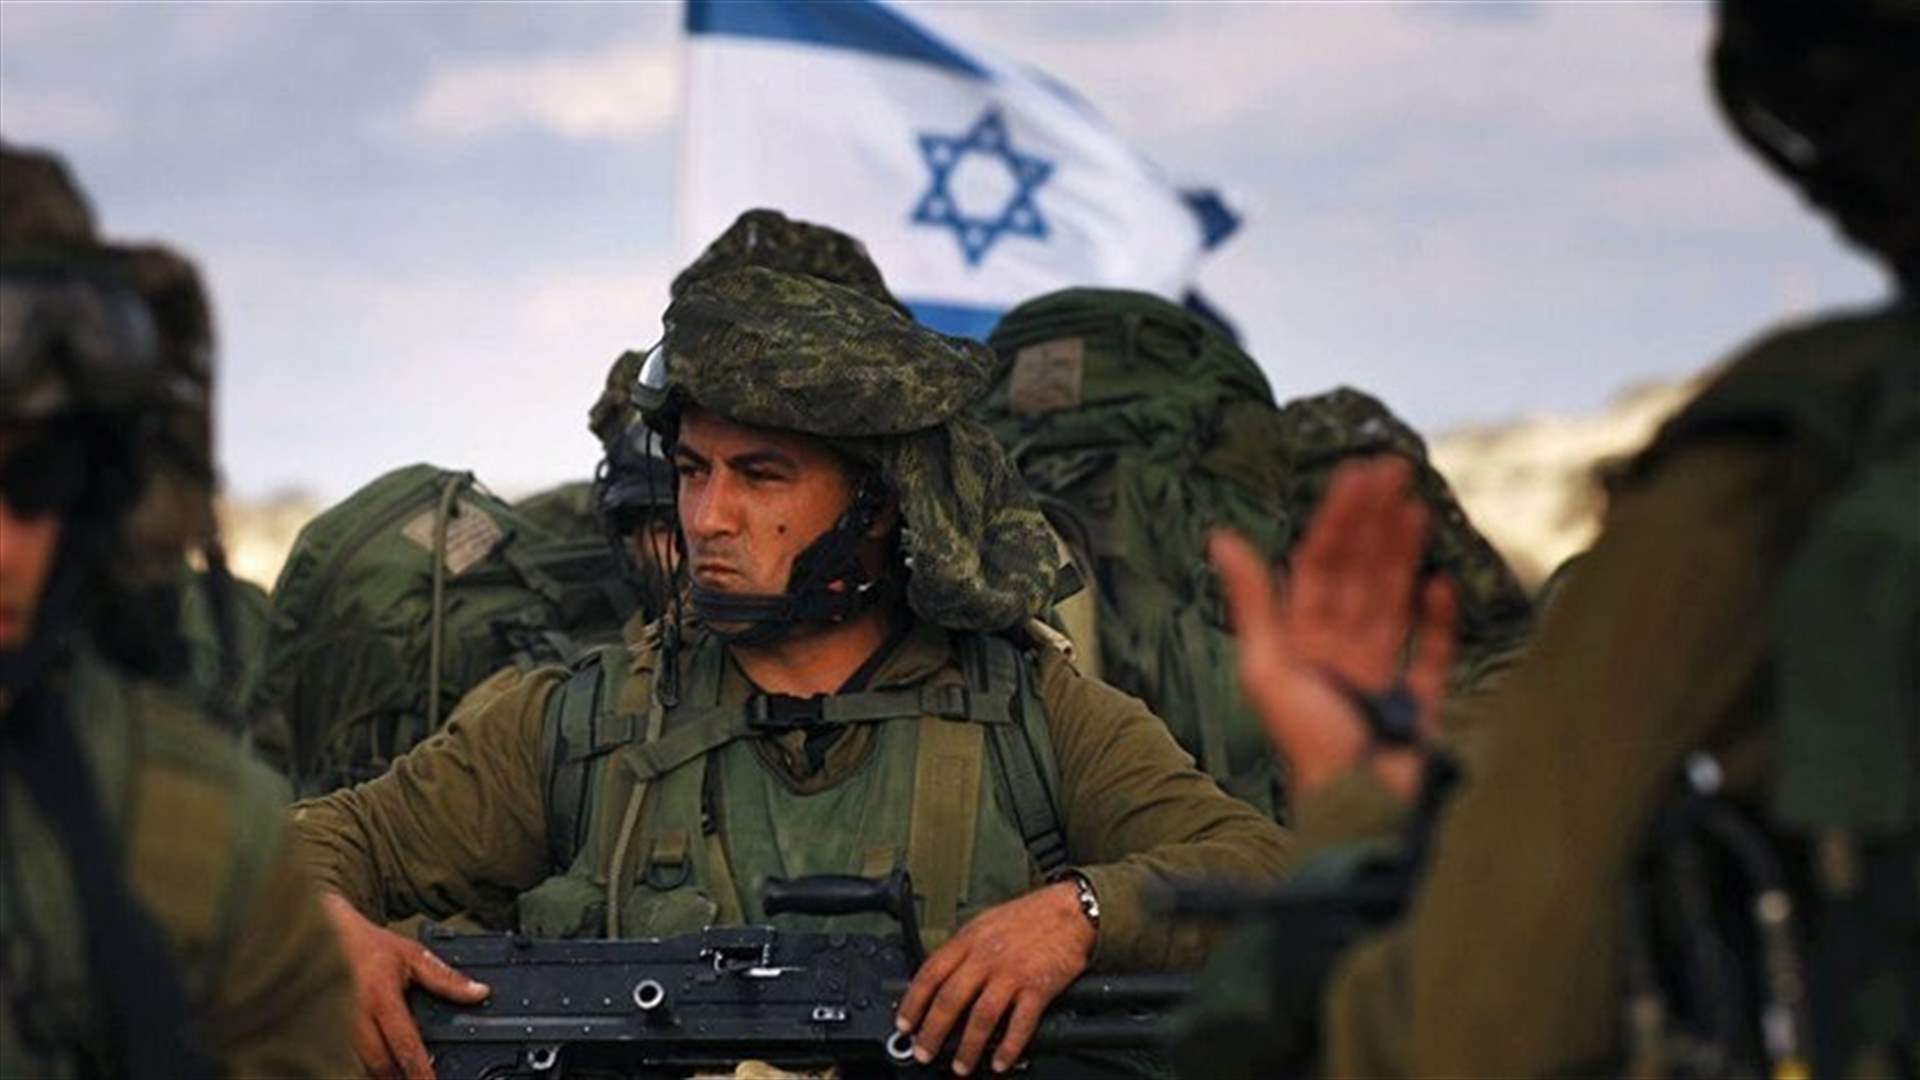 الجيش الإسرائيلي يعلن مقتل جندية كانت محتجزة في قطاع غزة لدى حماس